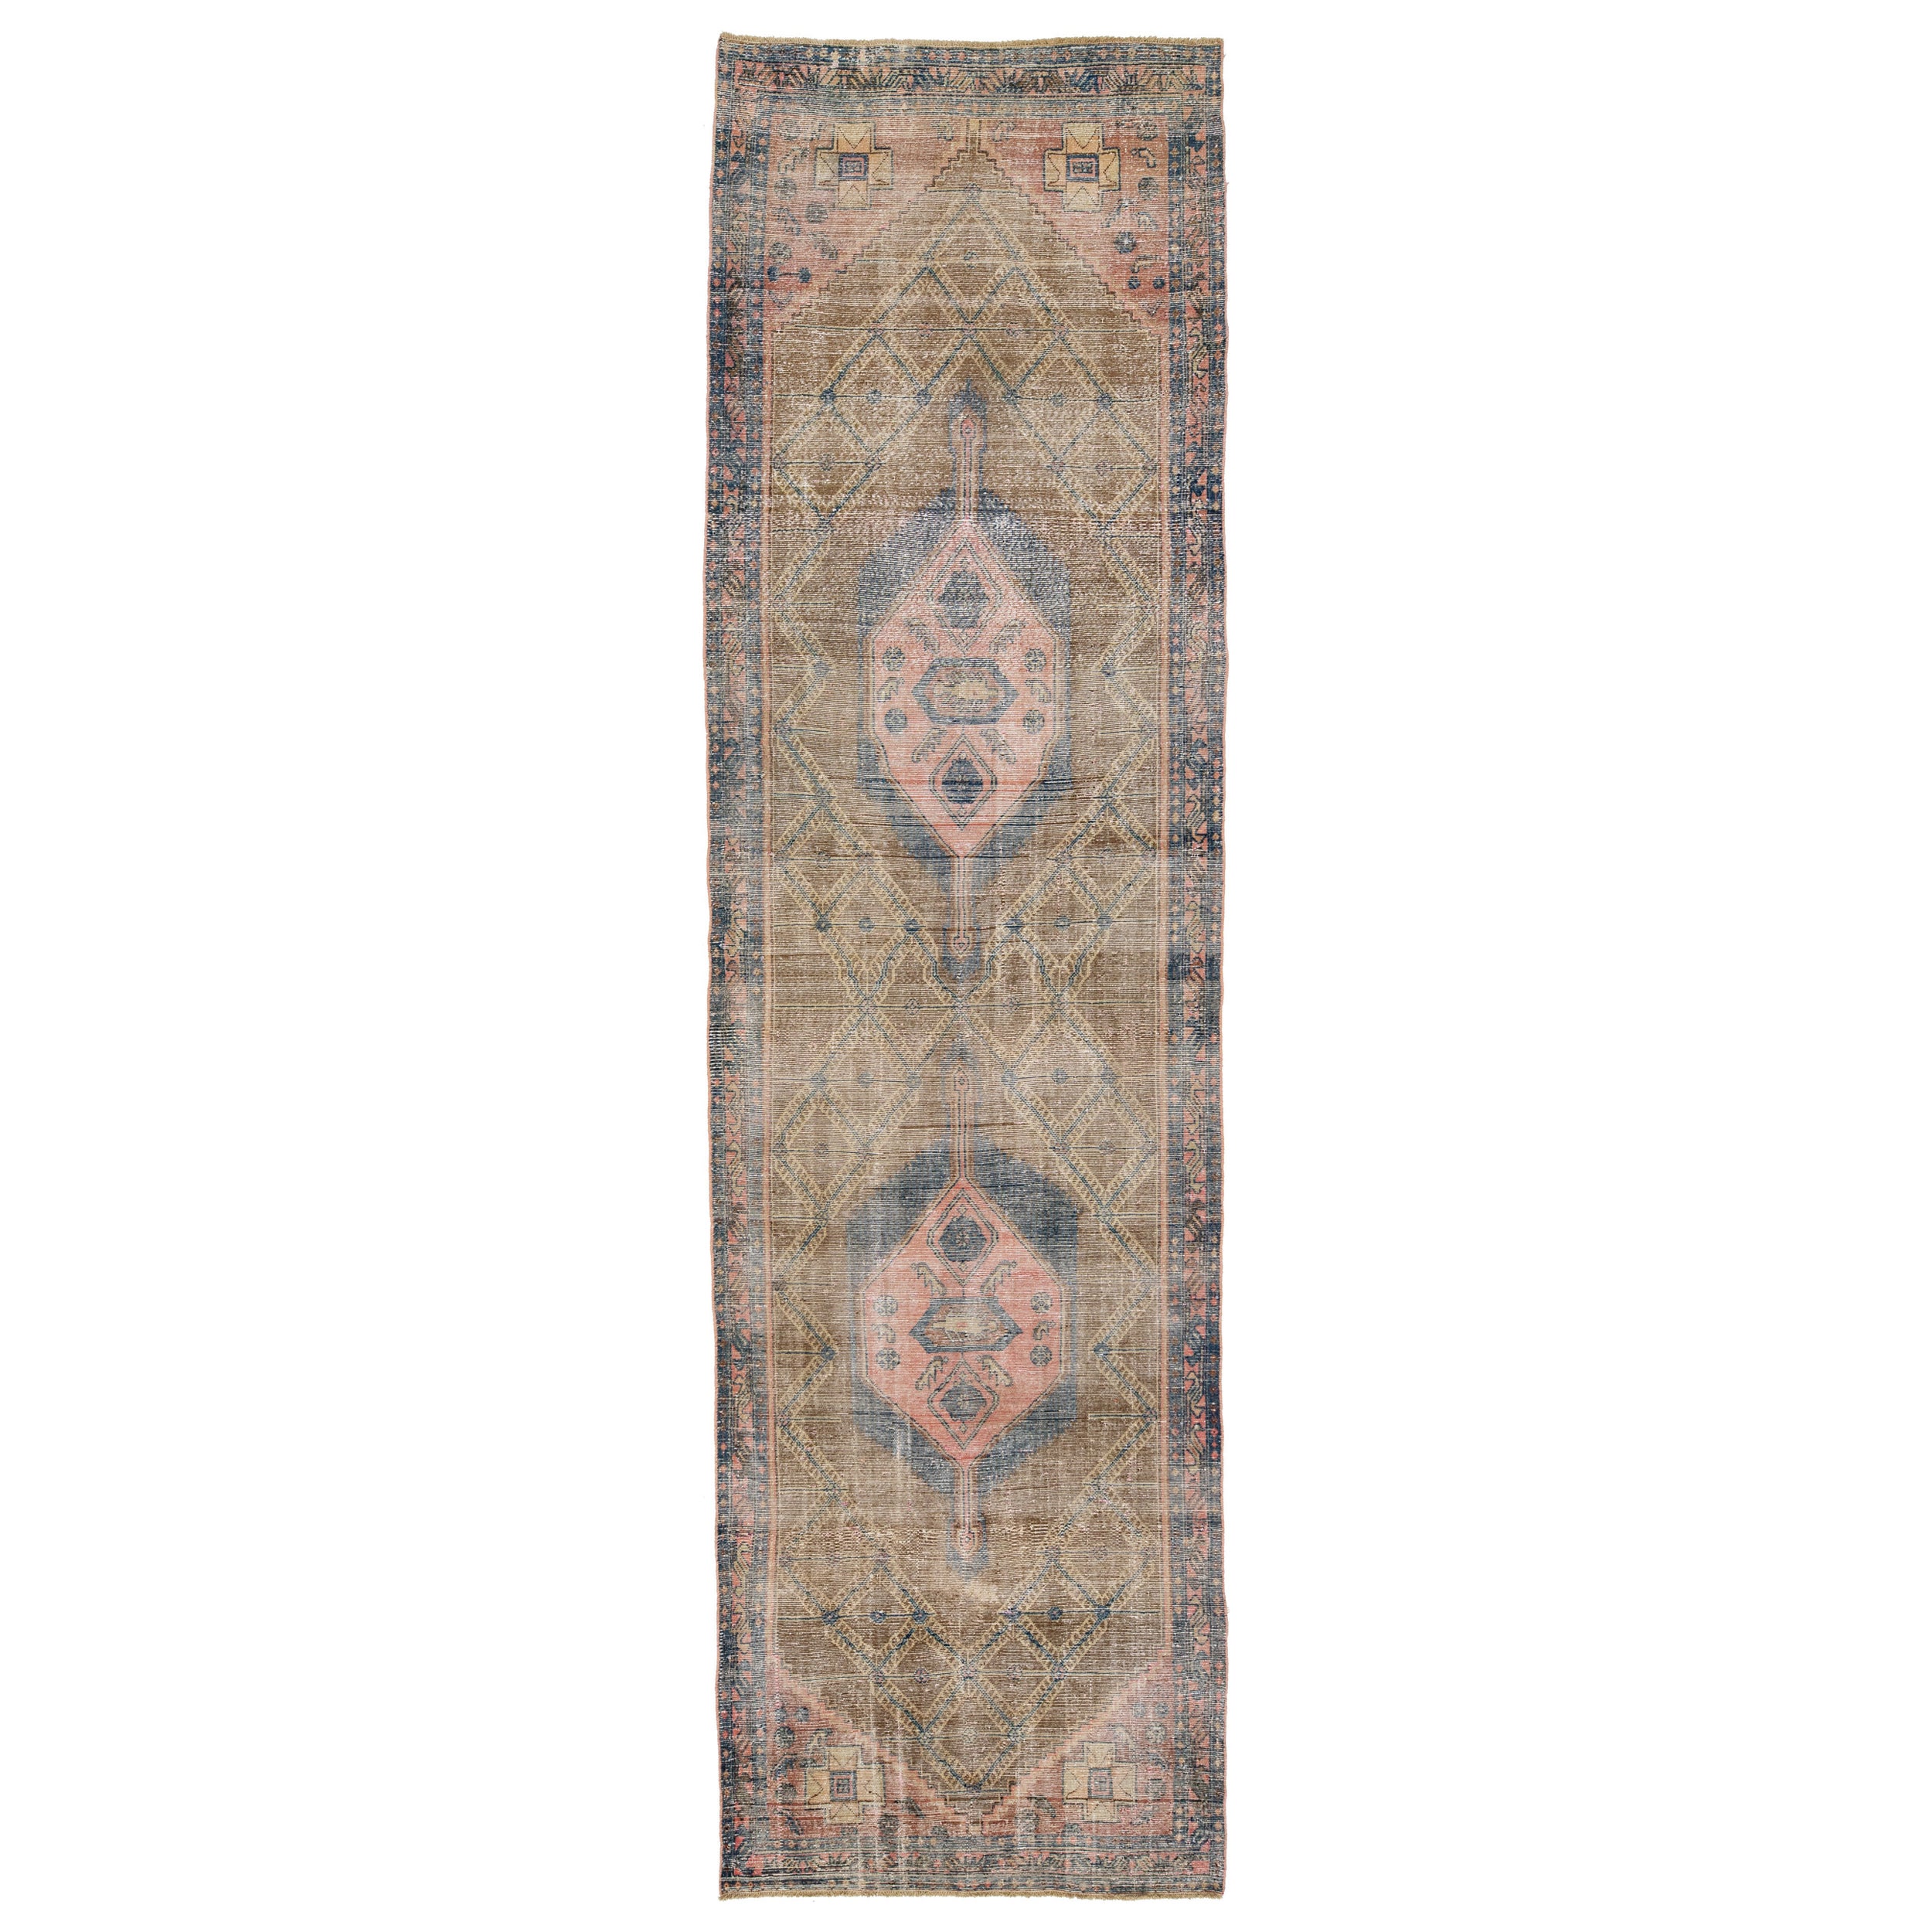 4 x 15 Vintage Distressed Persian Wool Runner In Brown With Tribal Motif (Chemin de table en laine persane vieillie avec motif tribal) en vente